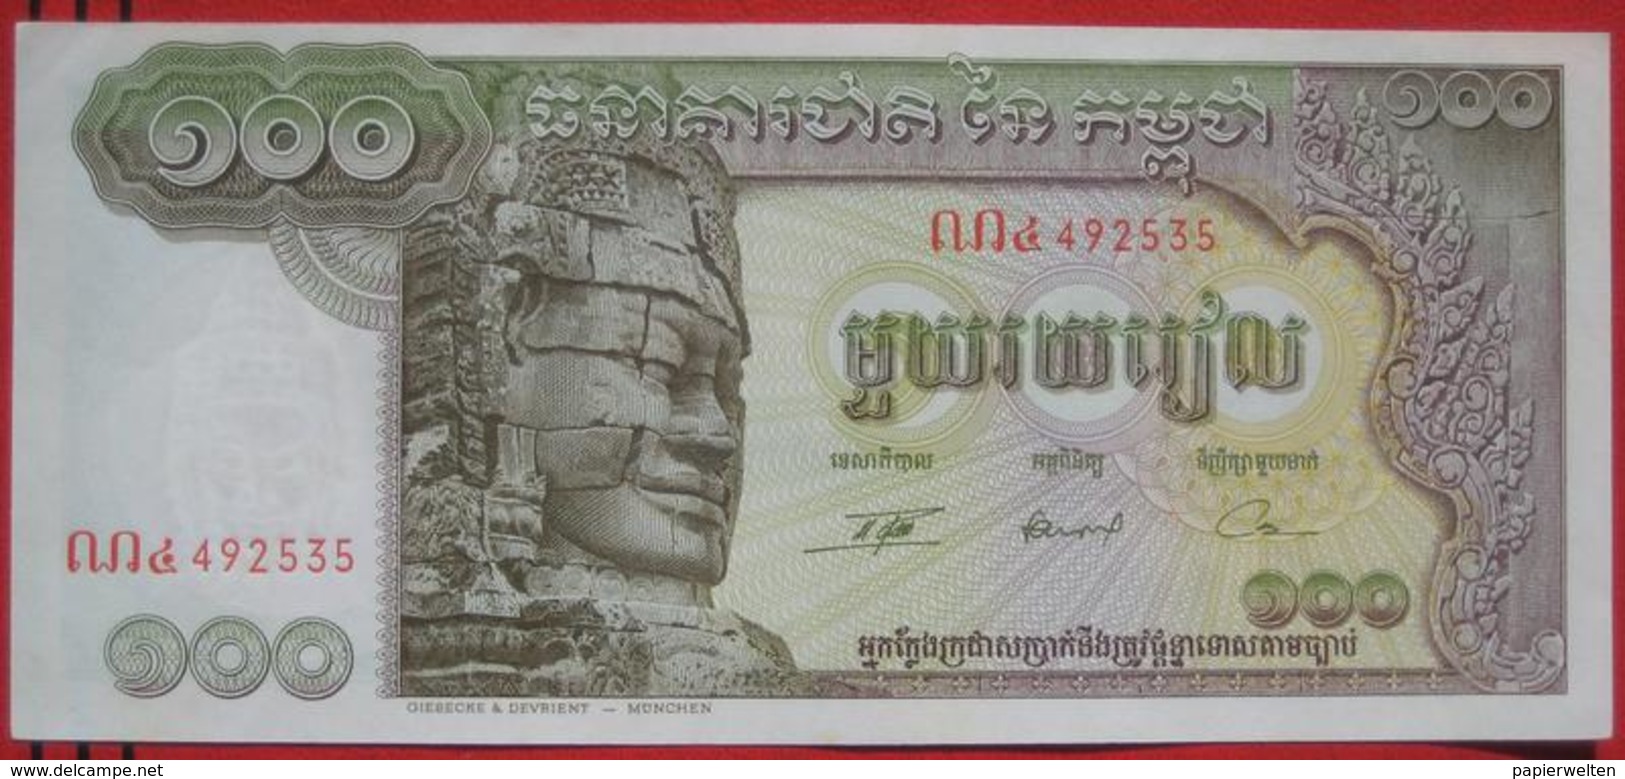 100 Riels ND (1972) - WPM 8c - Cambodia